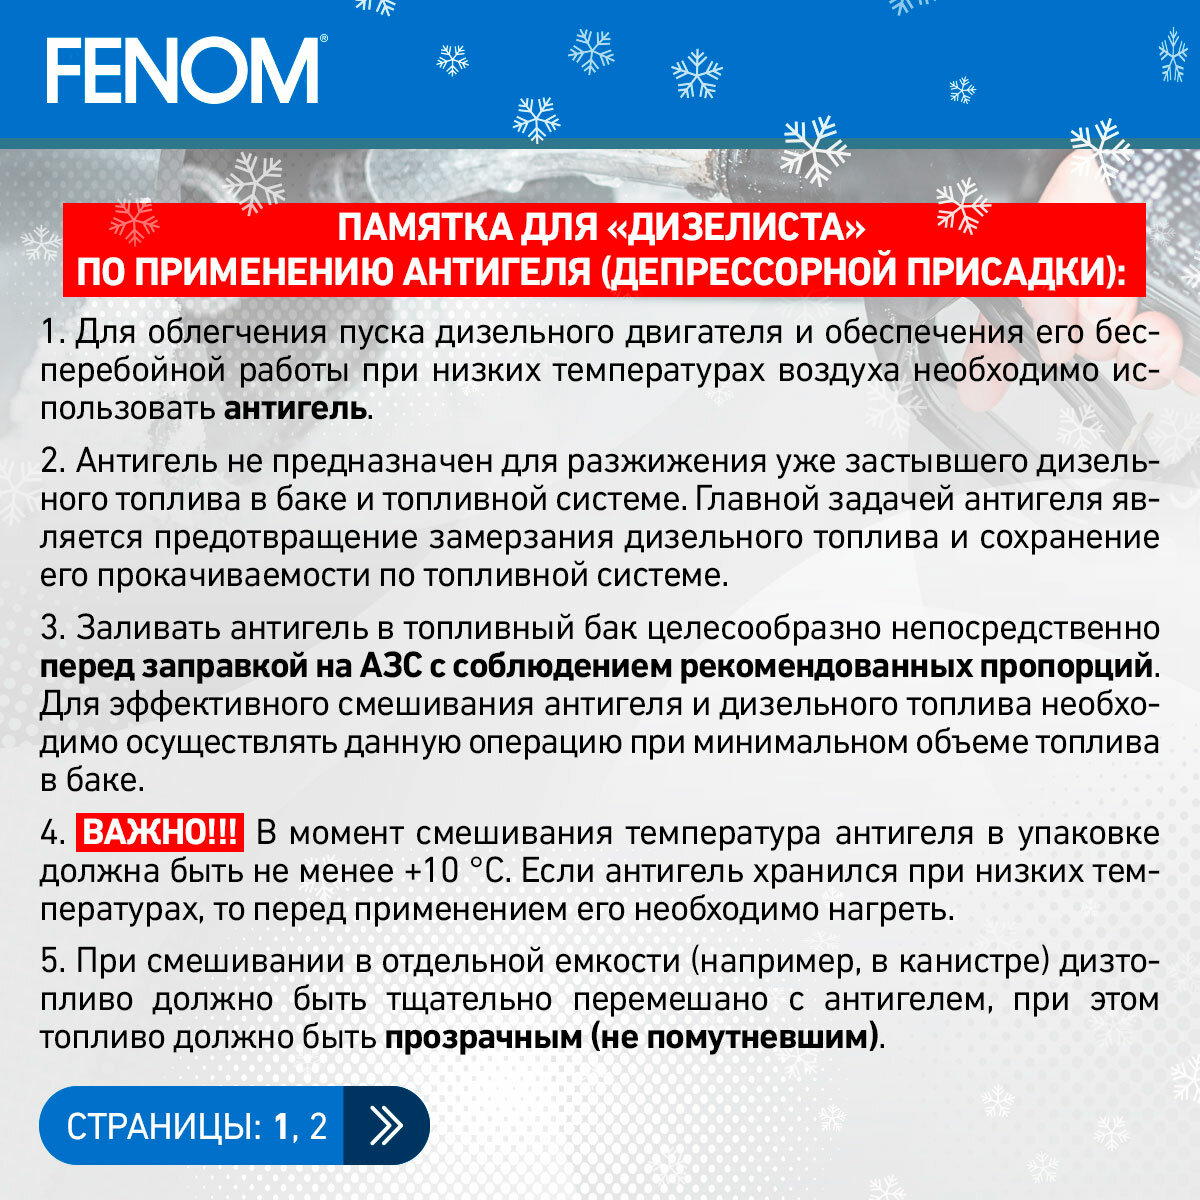 FENOM FN697N Wax anti-settling